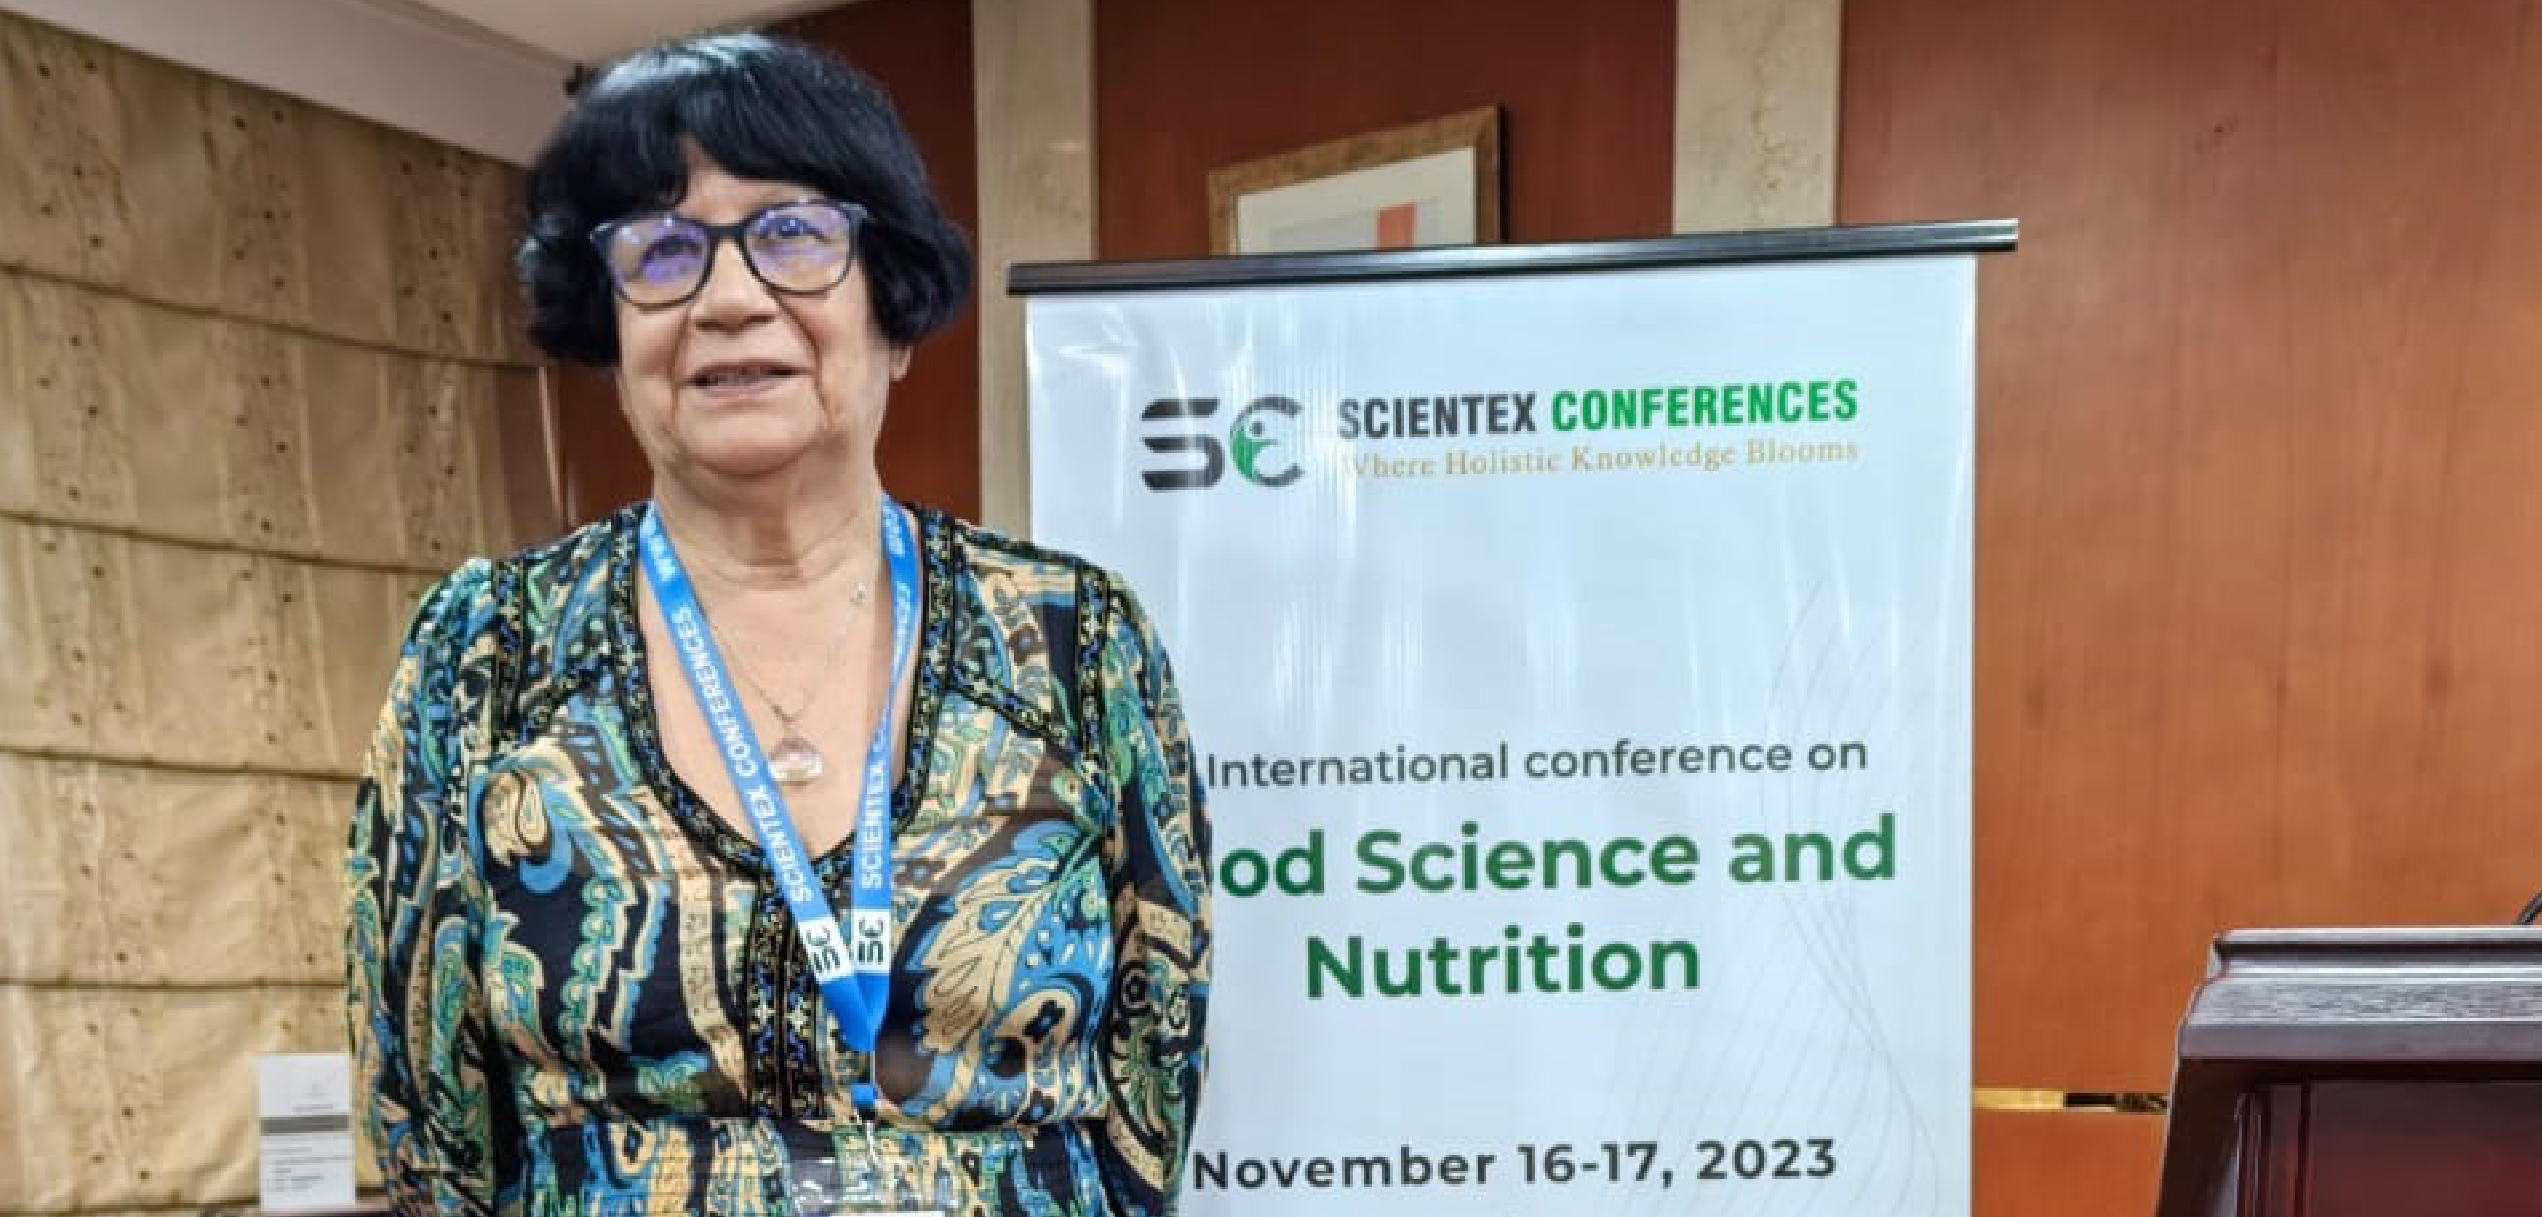 Dra. Susana Beatríz Martínez fue invitada a dictar la conferencia en el marco del 3rd International Conference on Nutraceuticals and Food Science 